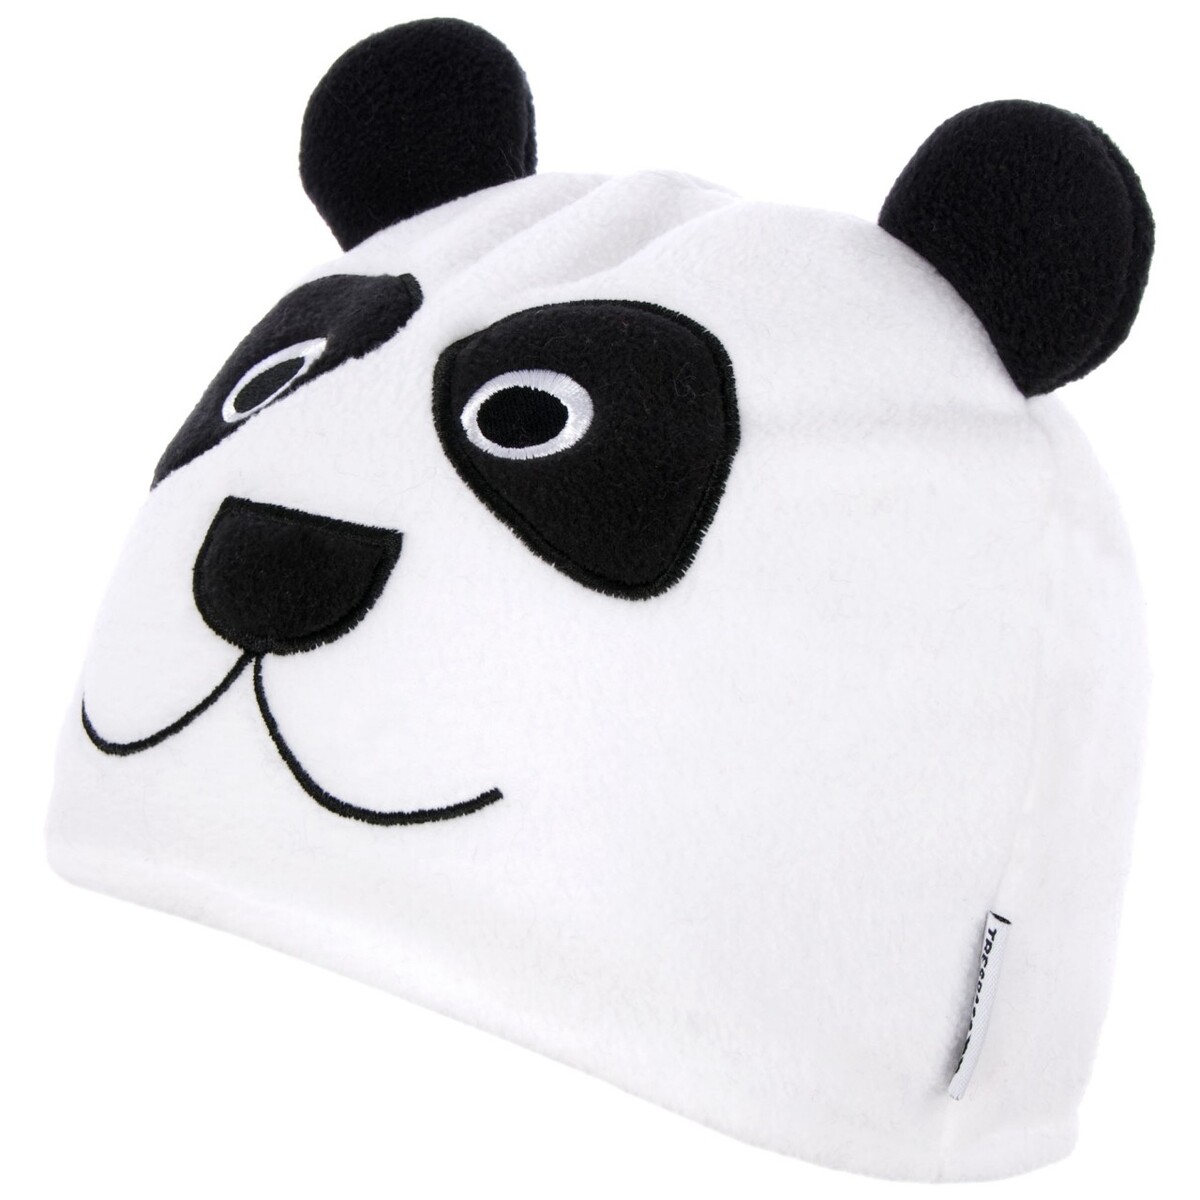 商品説明・ 子供用ビーニー帽。・ パンダのデザイン。・ 素材:ポリエステル100%。 カラーホワイト